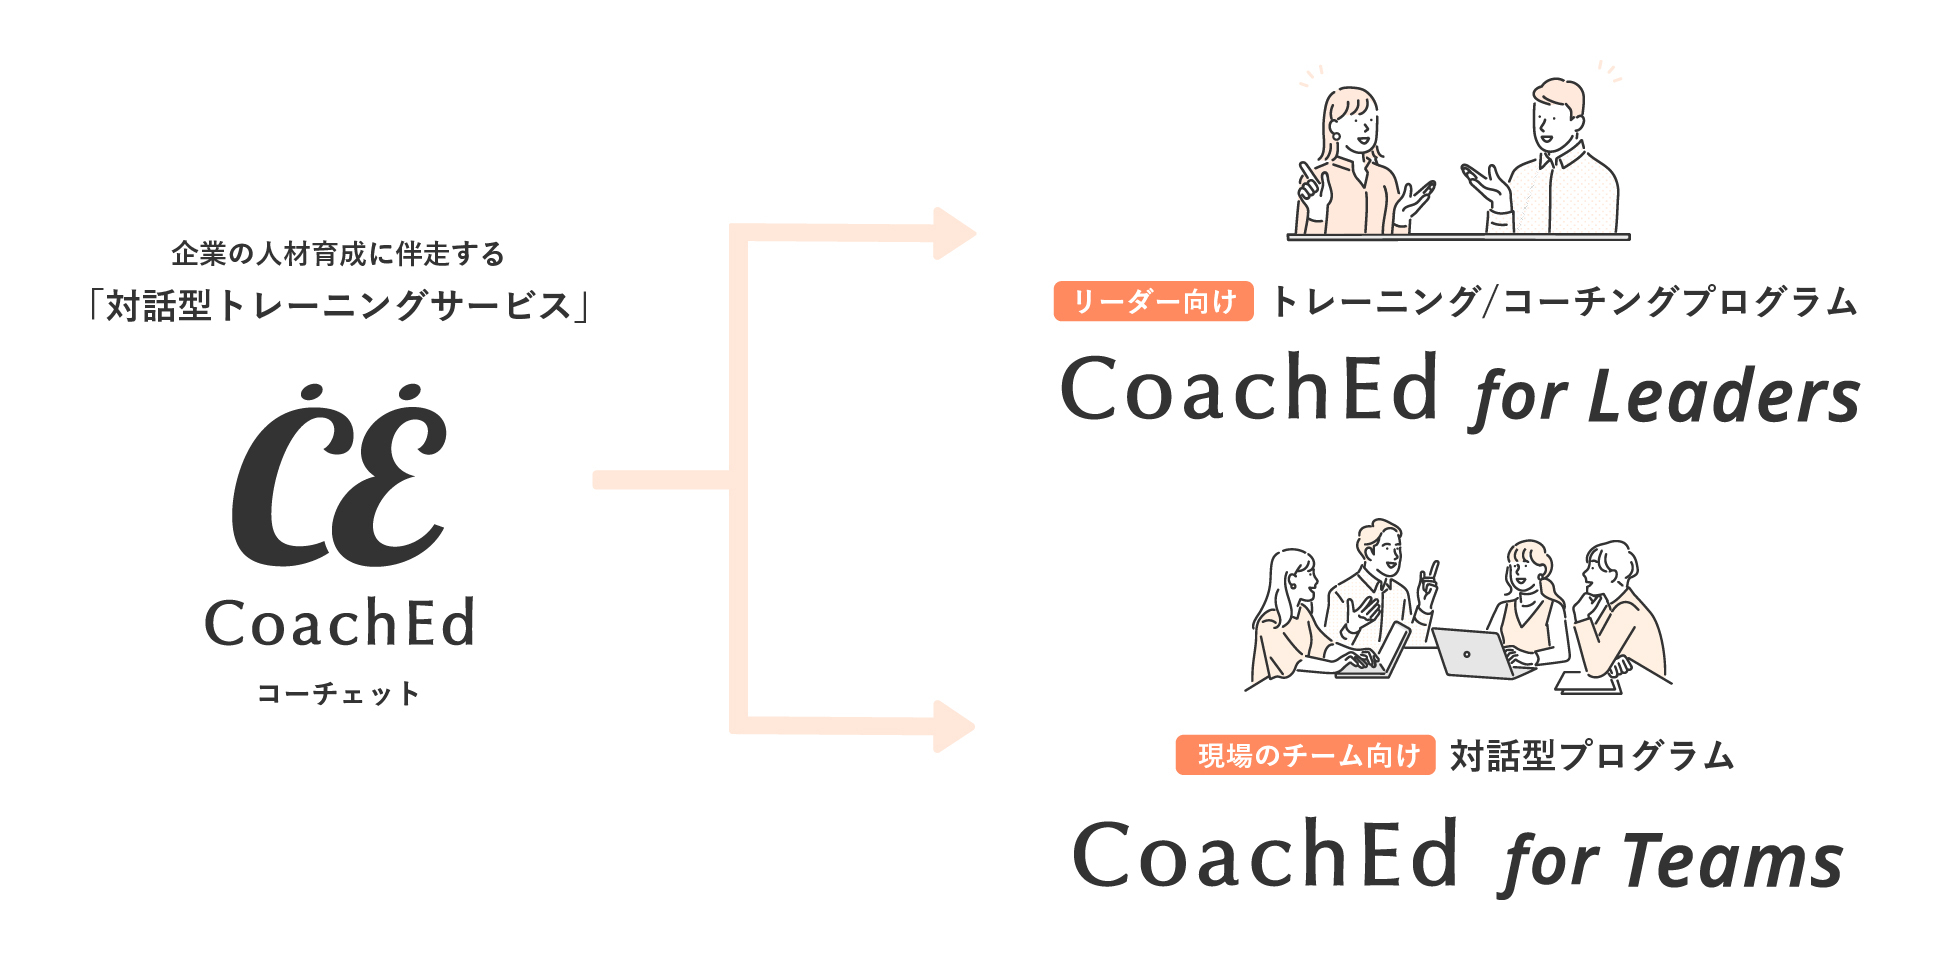 「CoachEd」が、企業の人材育成に伴走する「対話型トレーニング